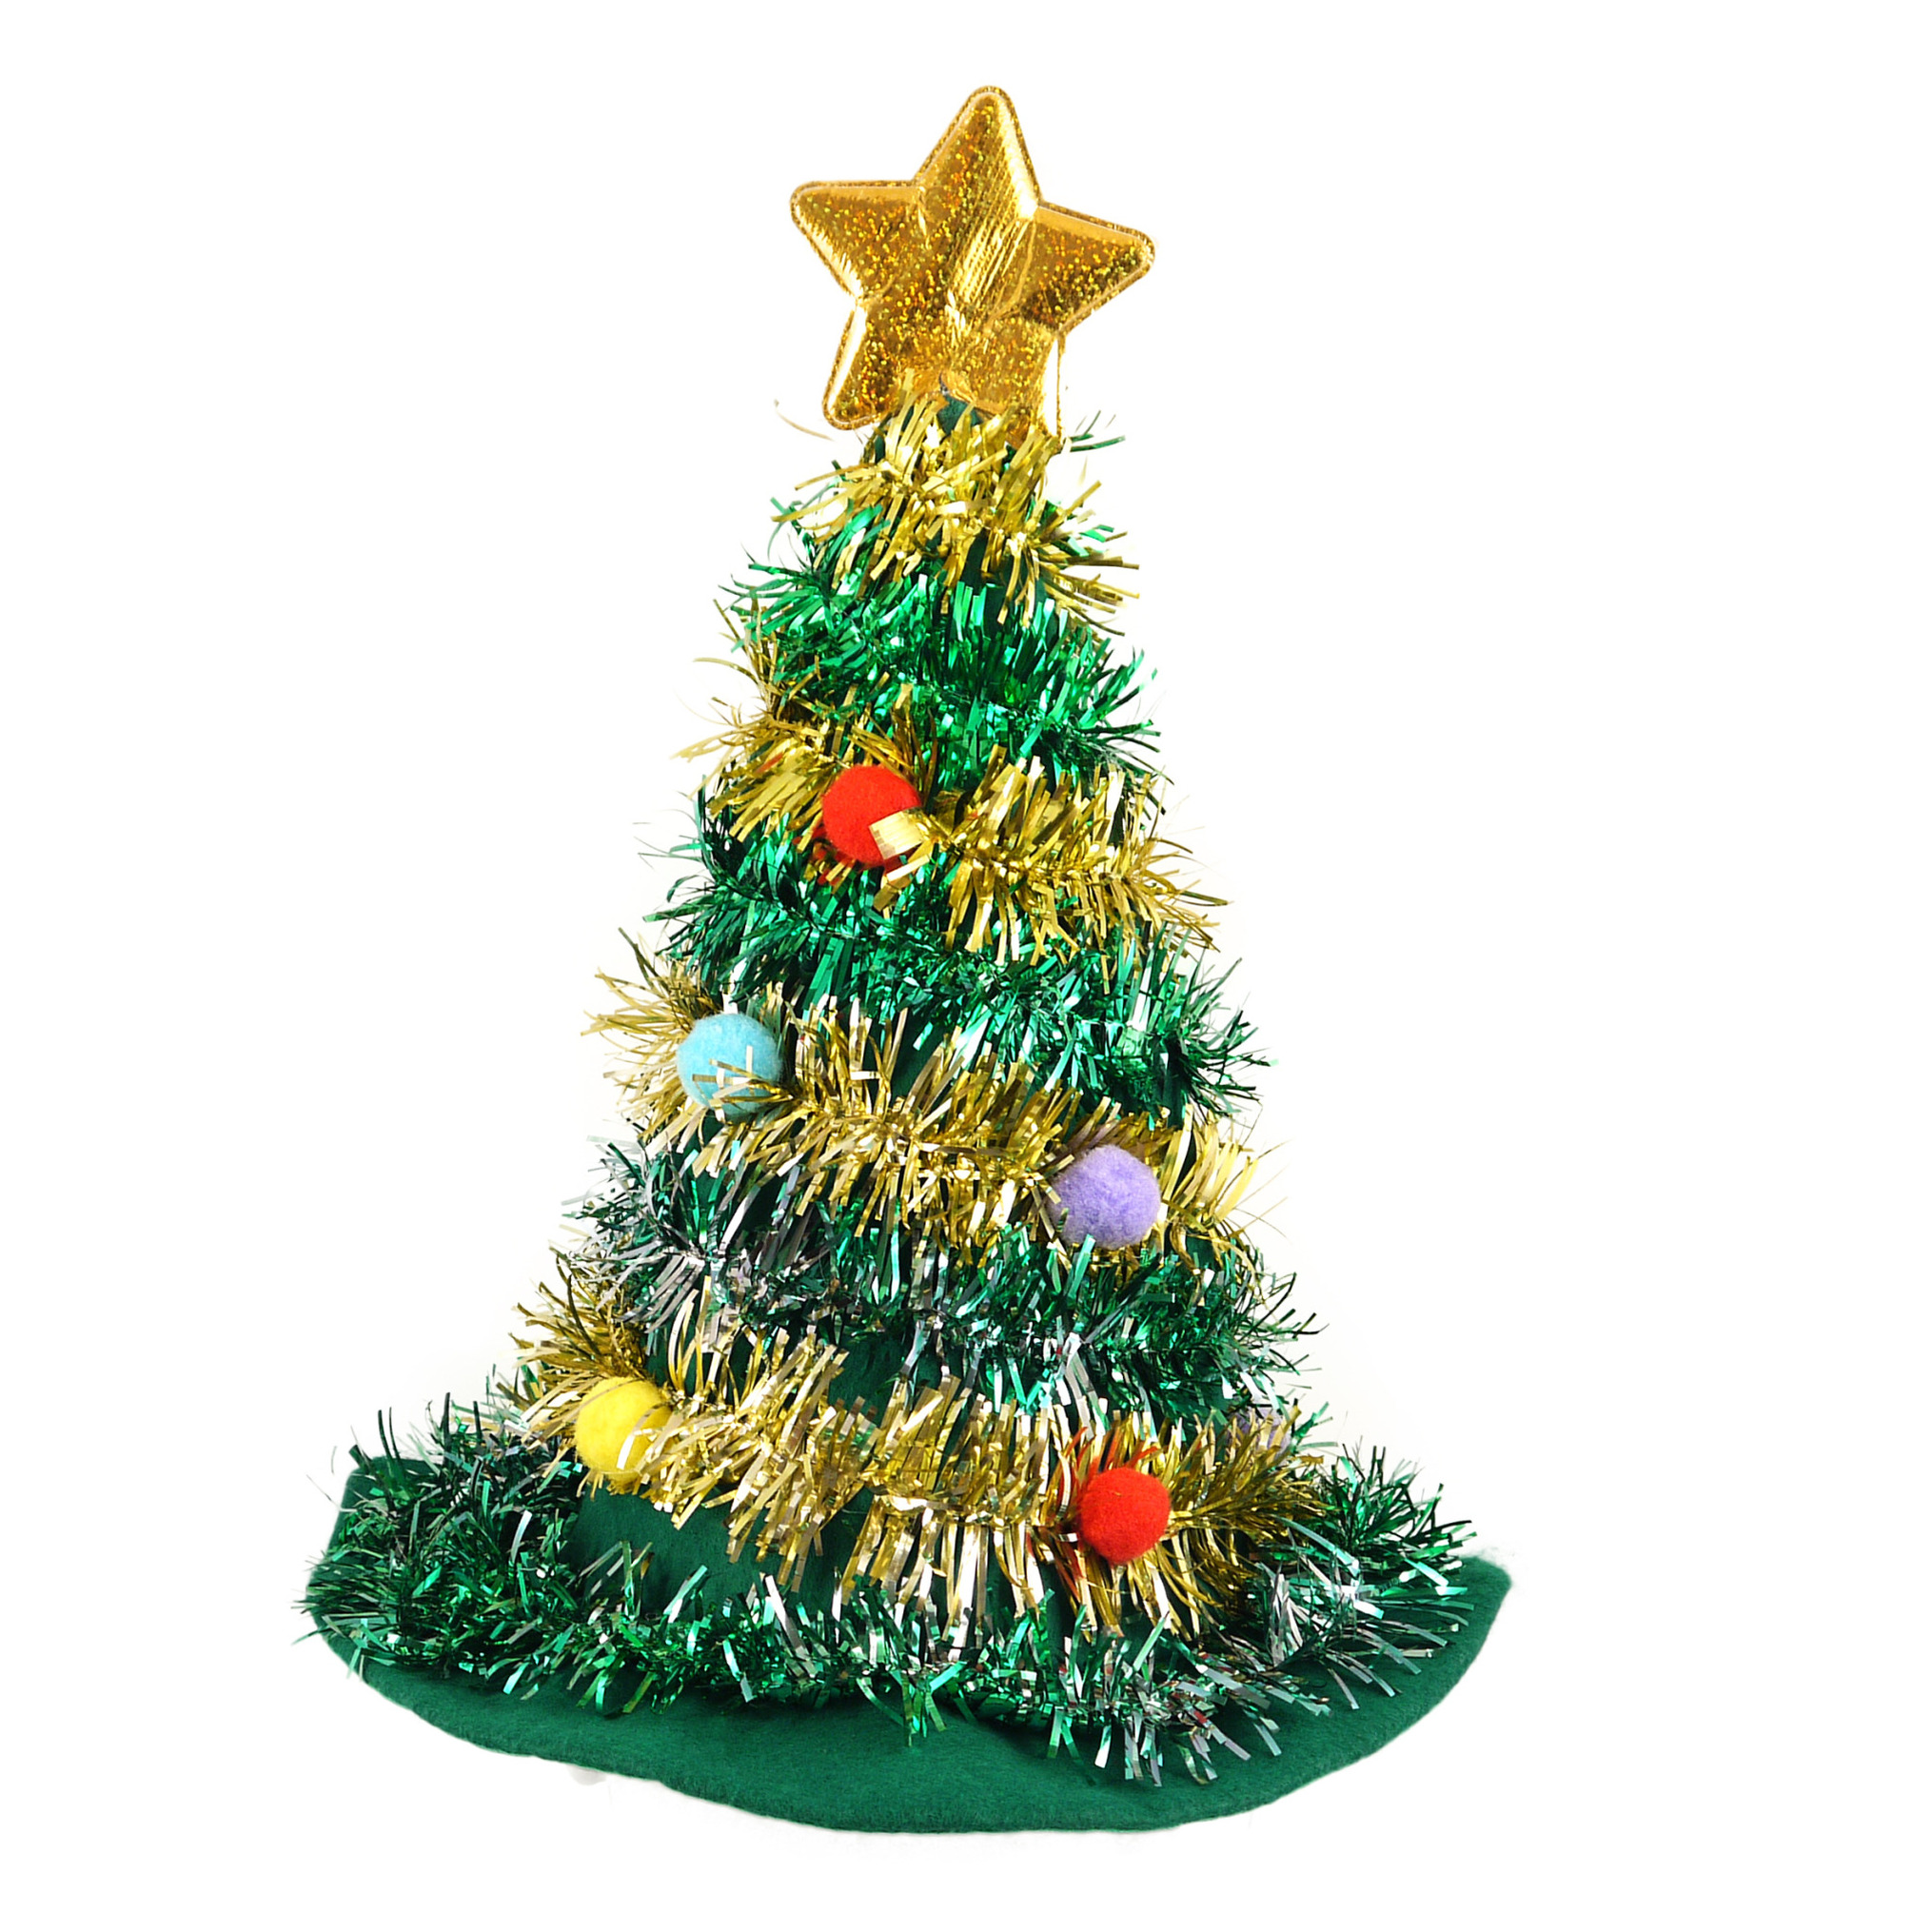 Kerstboom hoed-muts 43 cm groen voor volwassenen kersthoed-muts